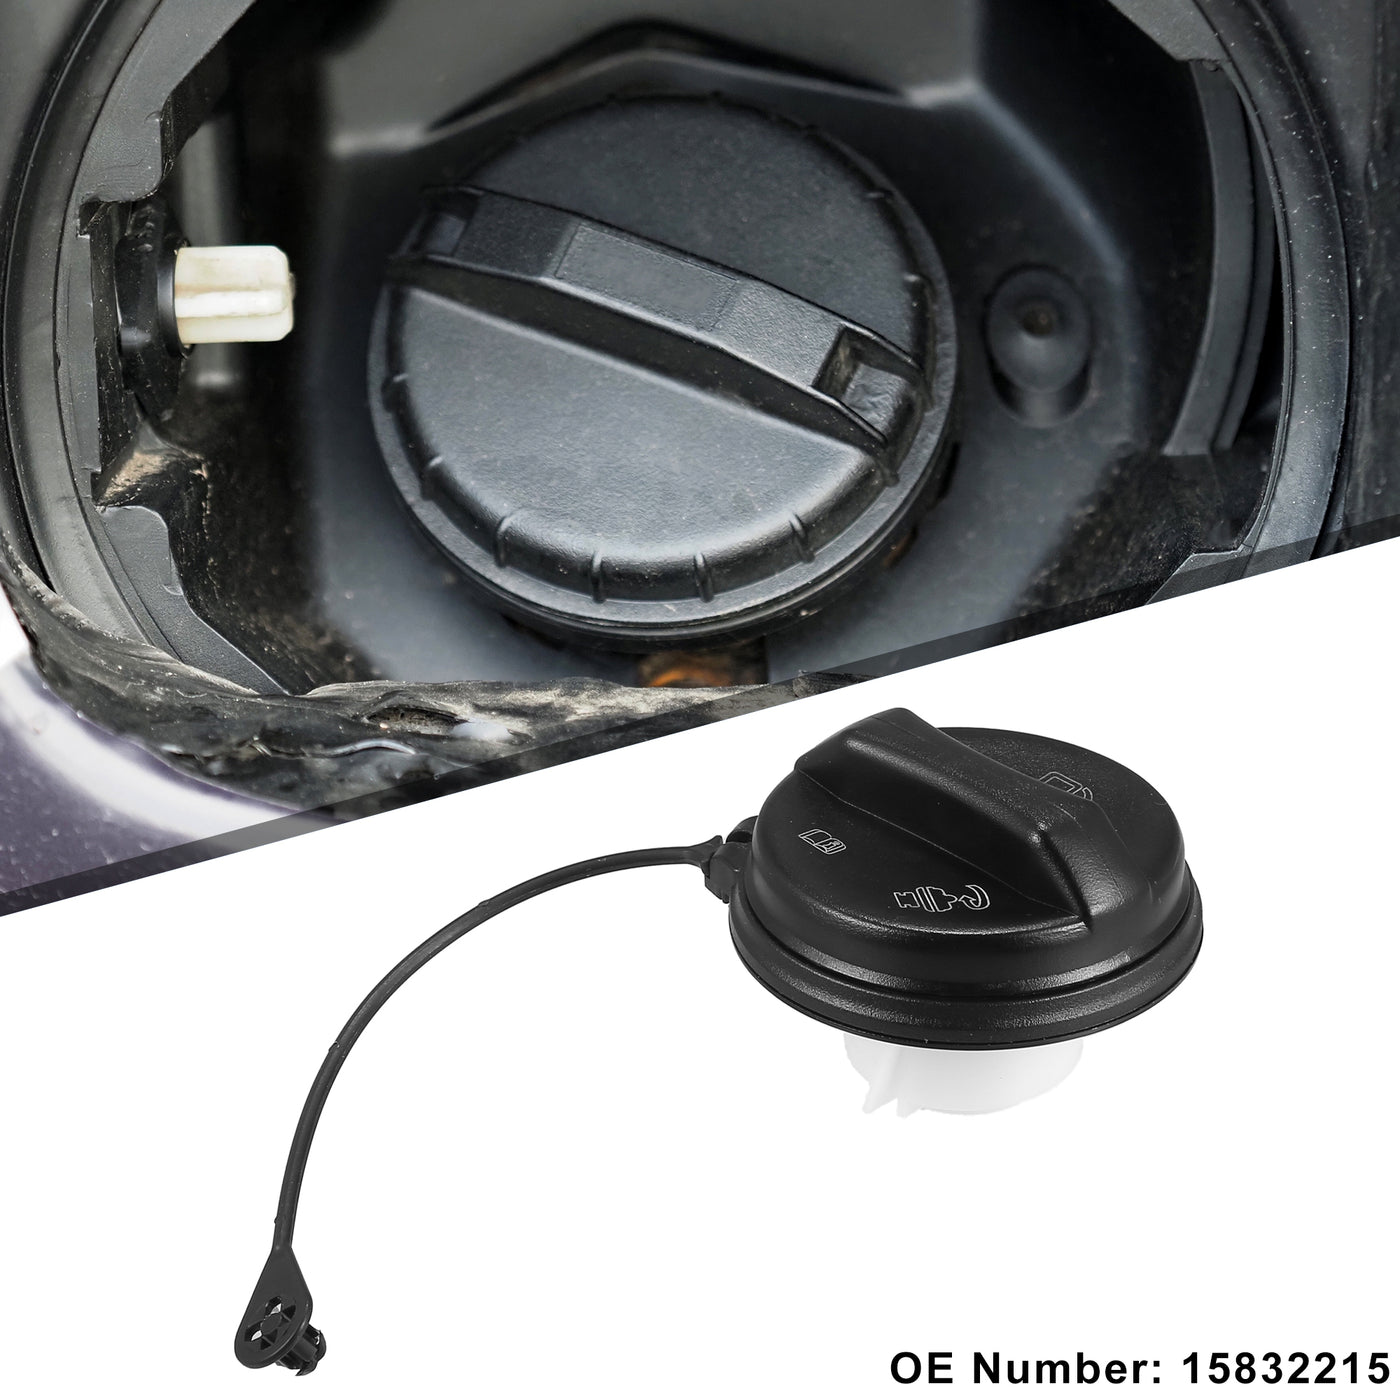 Motoforti Car Fuel Tank Filler Cover, Gas Tank Cap, for Cadillac XLR 2006-2009, ABS, No.15832215, Black